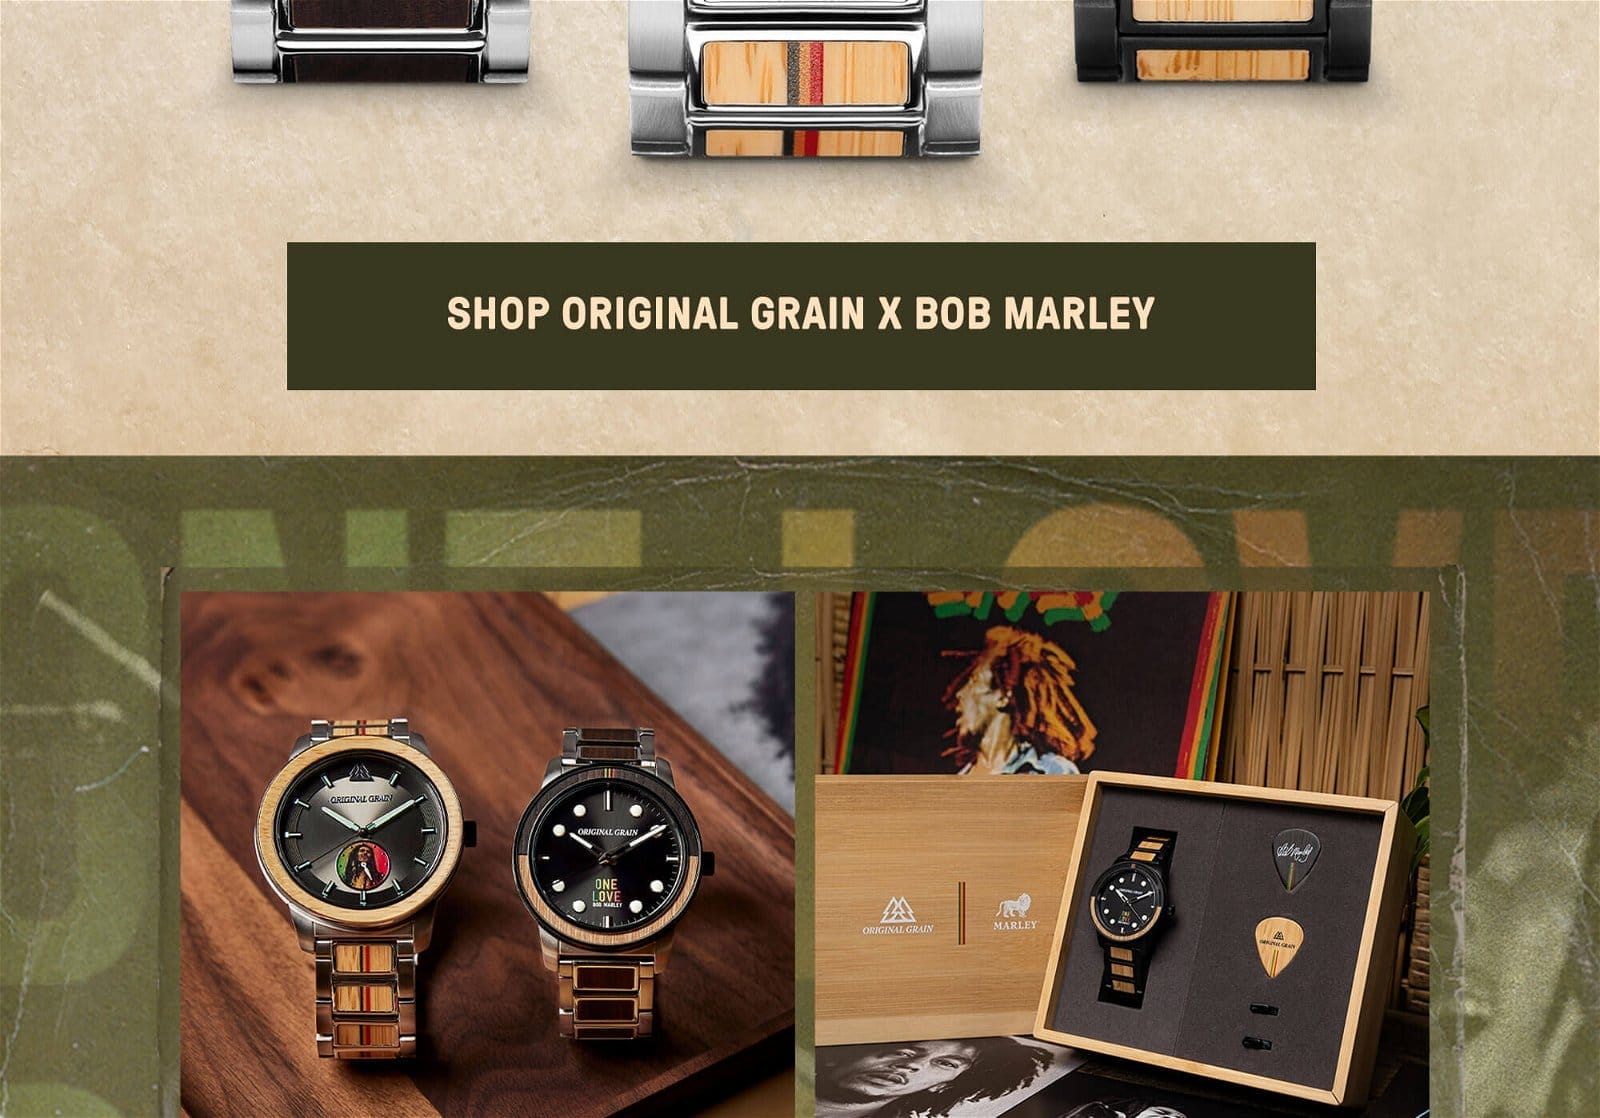 Click Here to Shop Original Grain's x Bob Marley